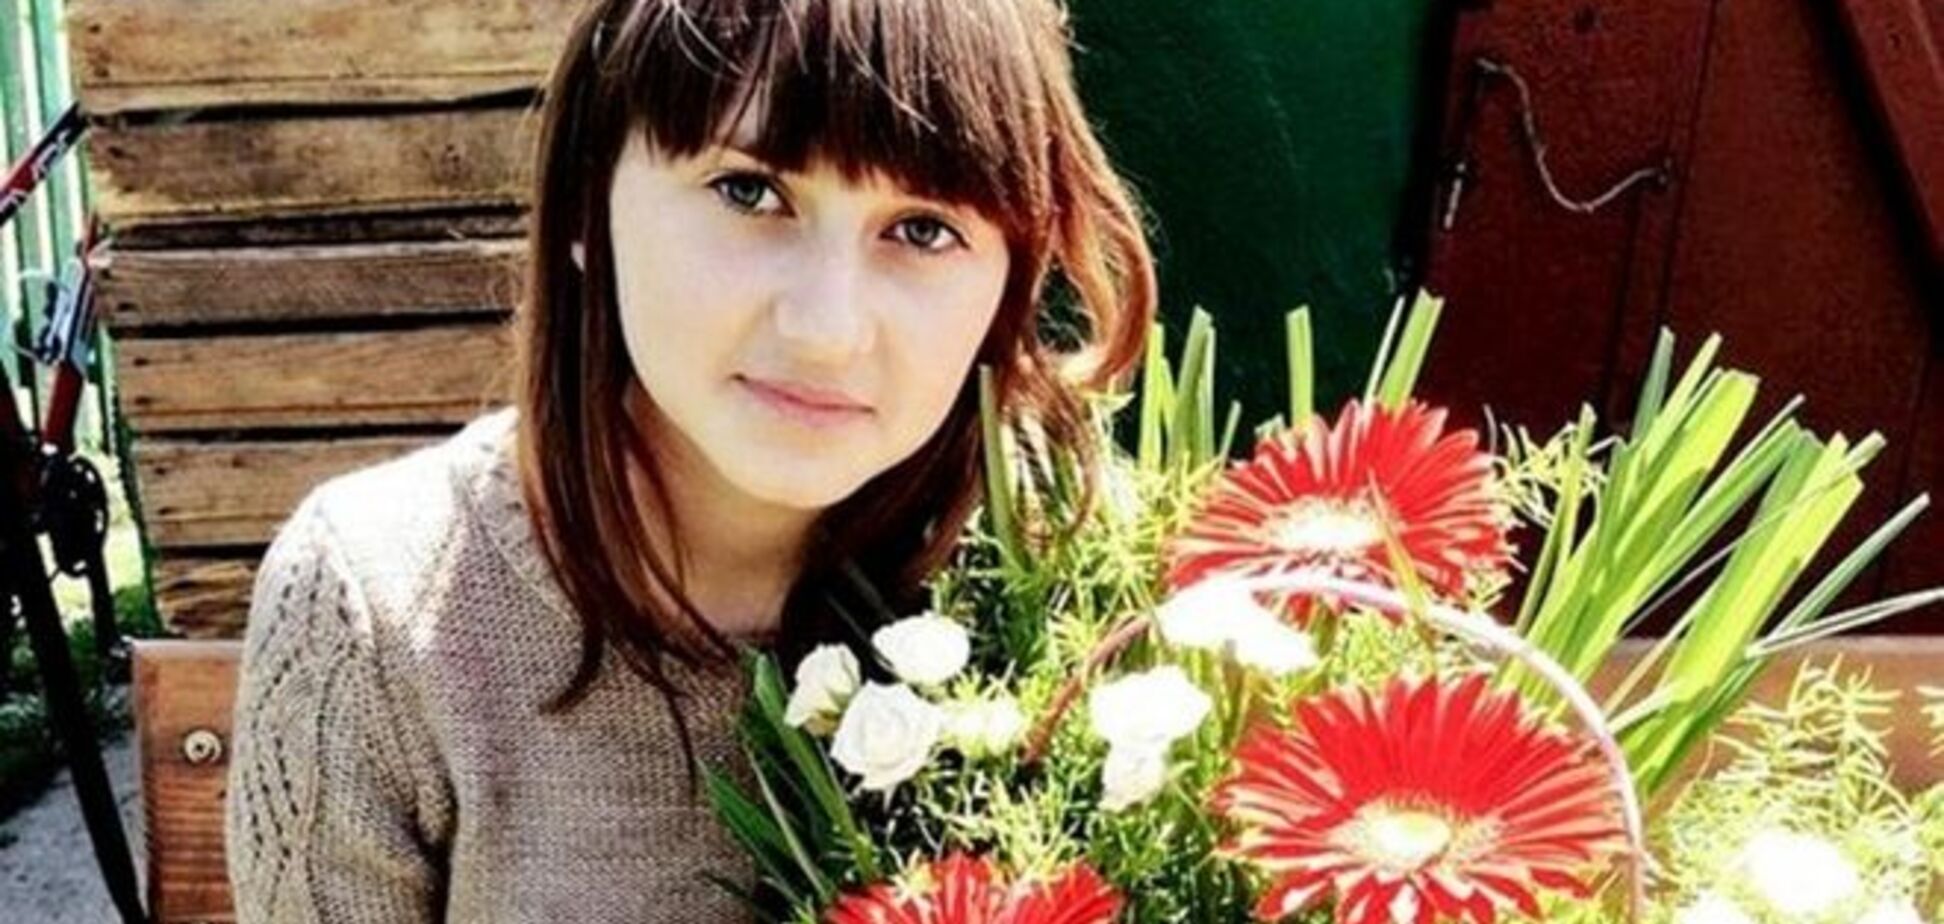 20 днів під замком. Затримано викрадачів 16-річної дівчини з Коломиї: відео МВС